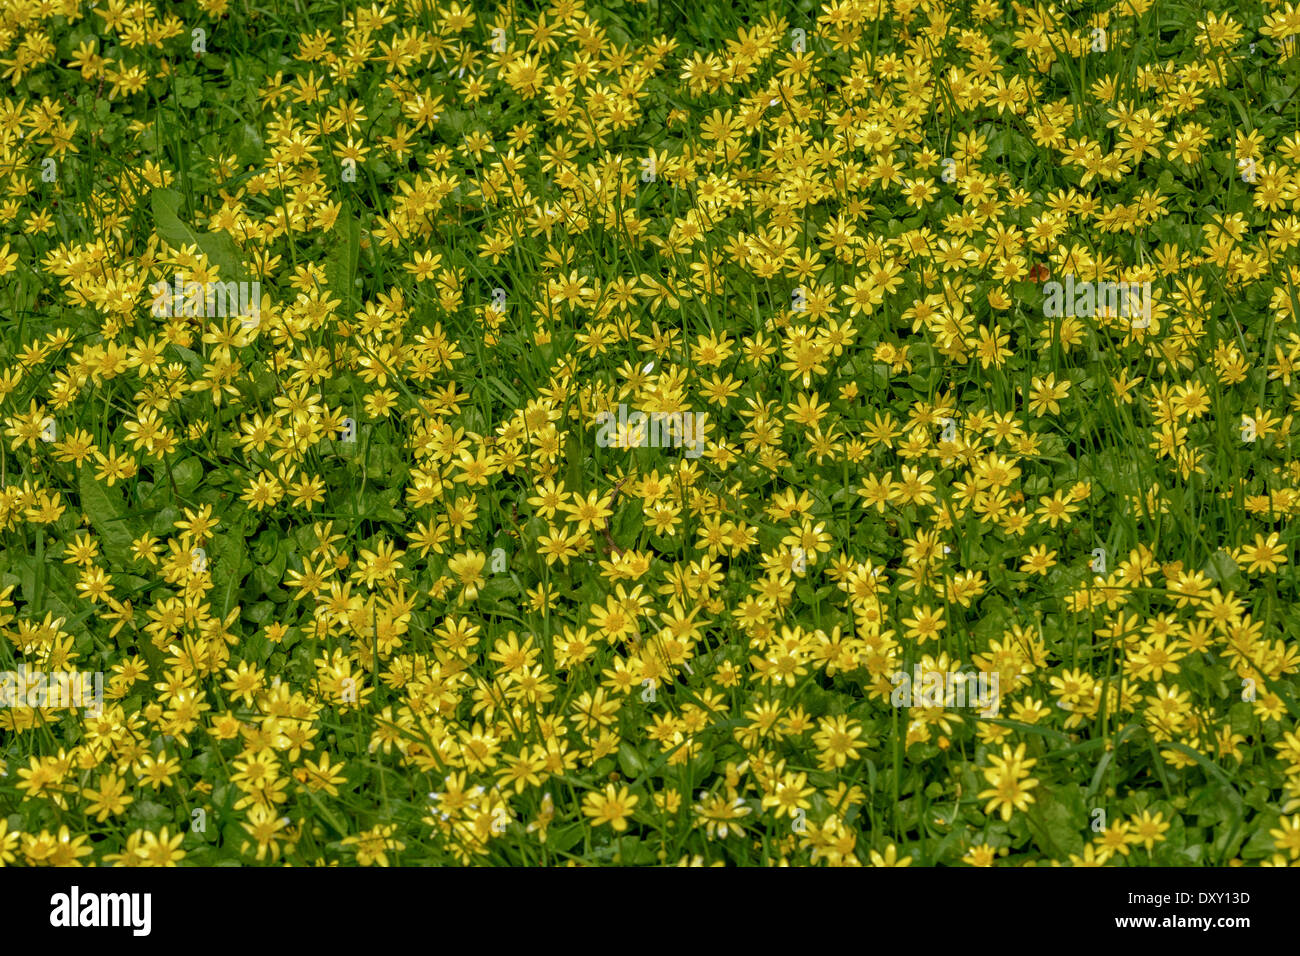 Masse de Chélidoine moindre jaune / Ranunculus ficaria Ficaria verna / à côté de la route. Forme ampoule racine a donné lieu à de nom. Scrofulariacées Banque D'Images